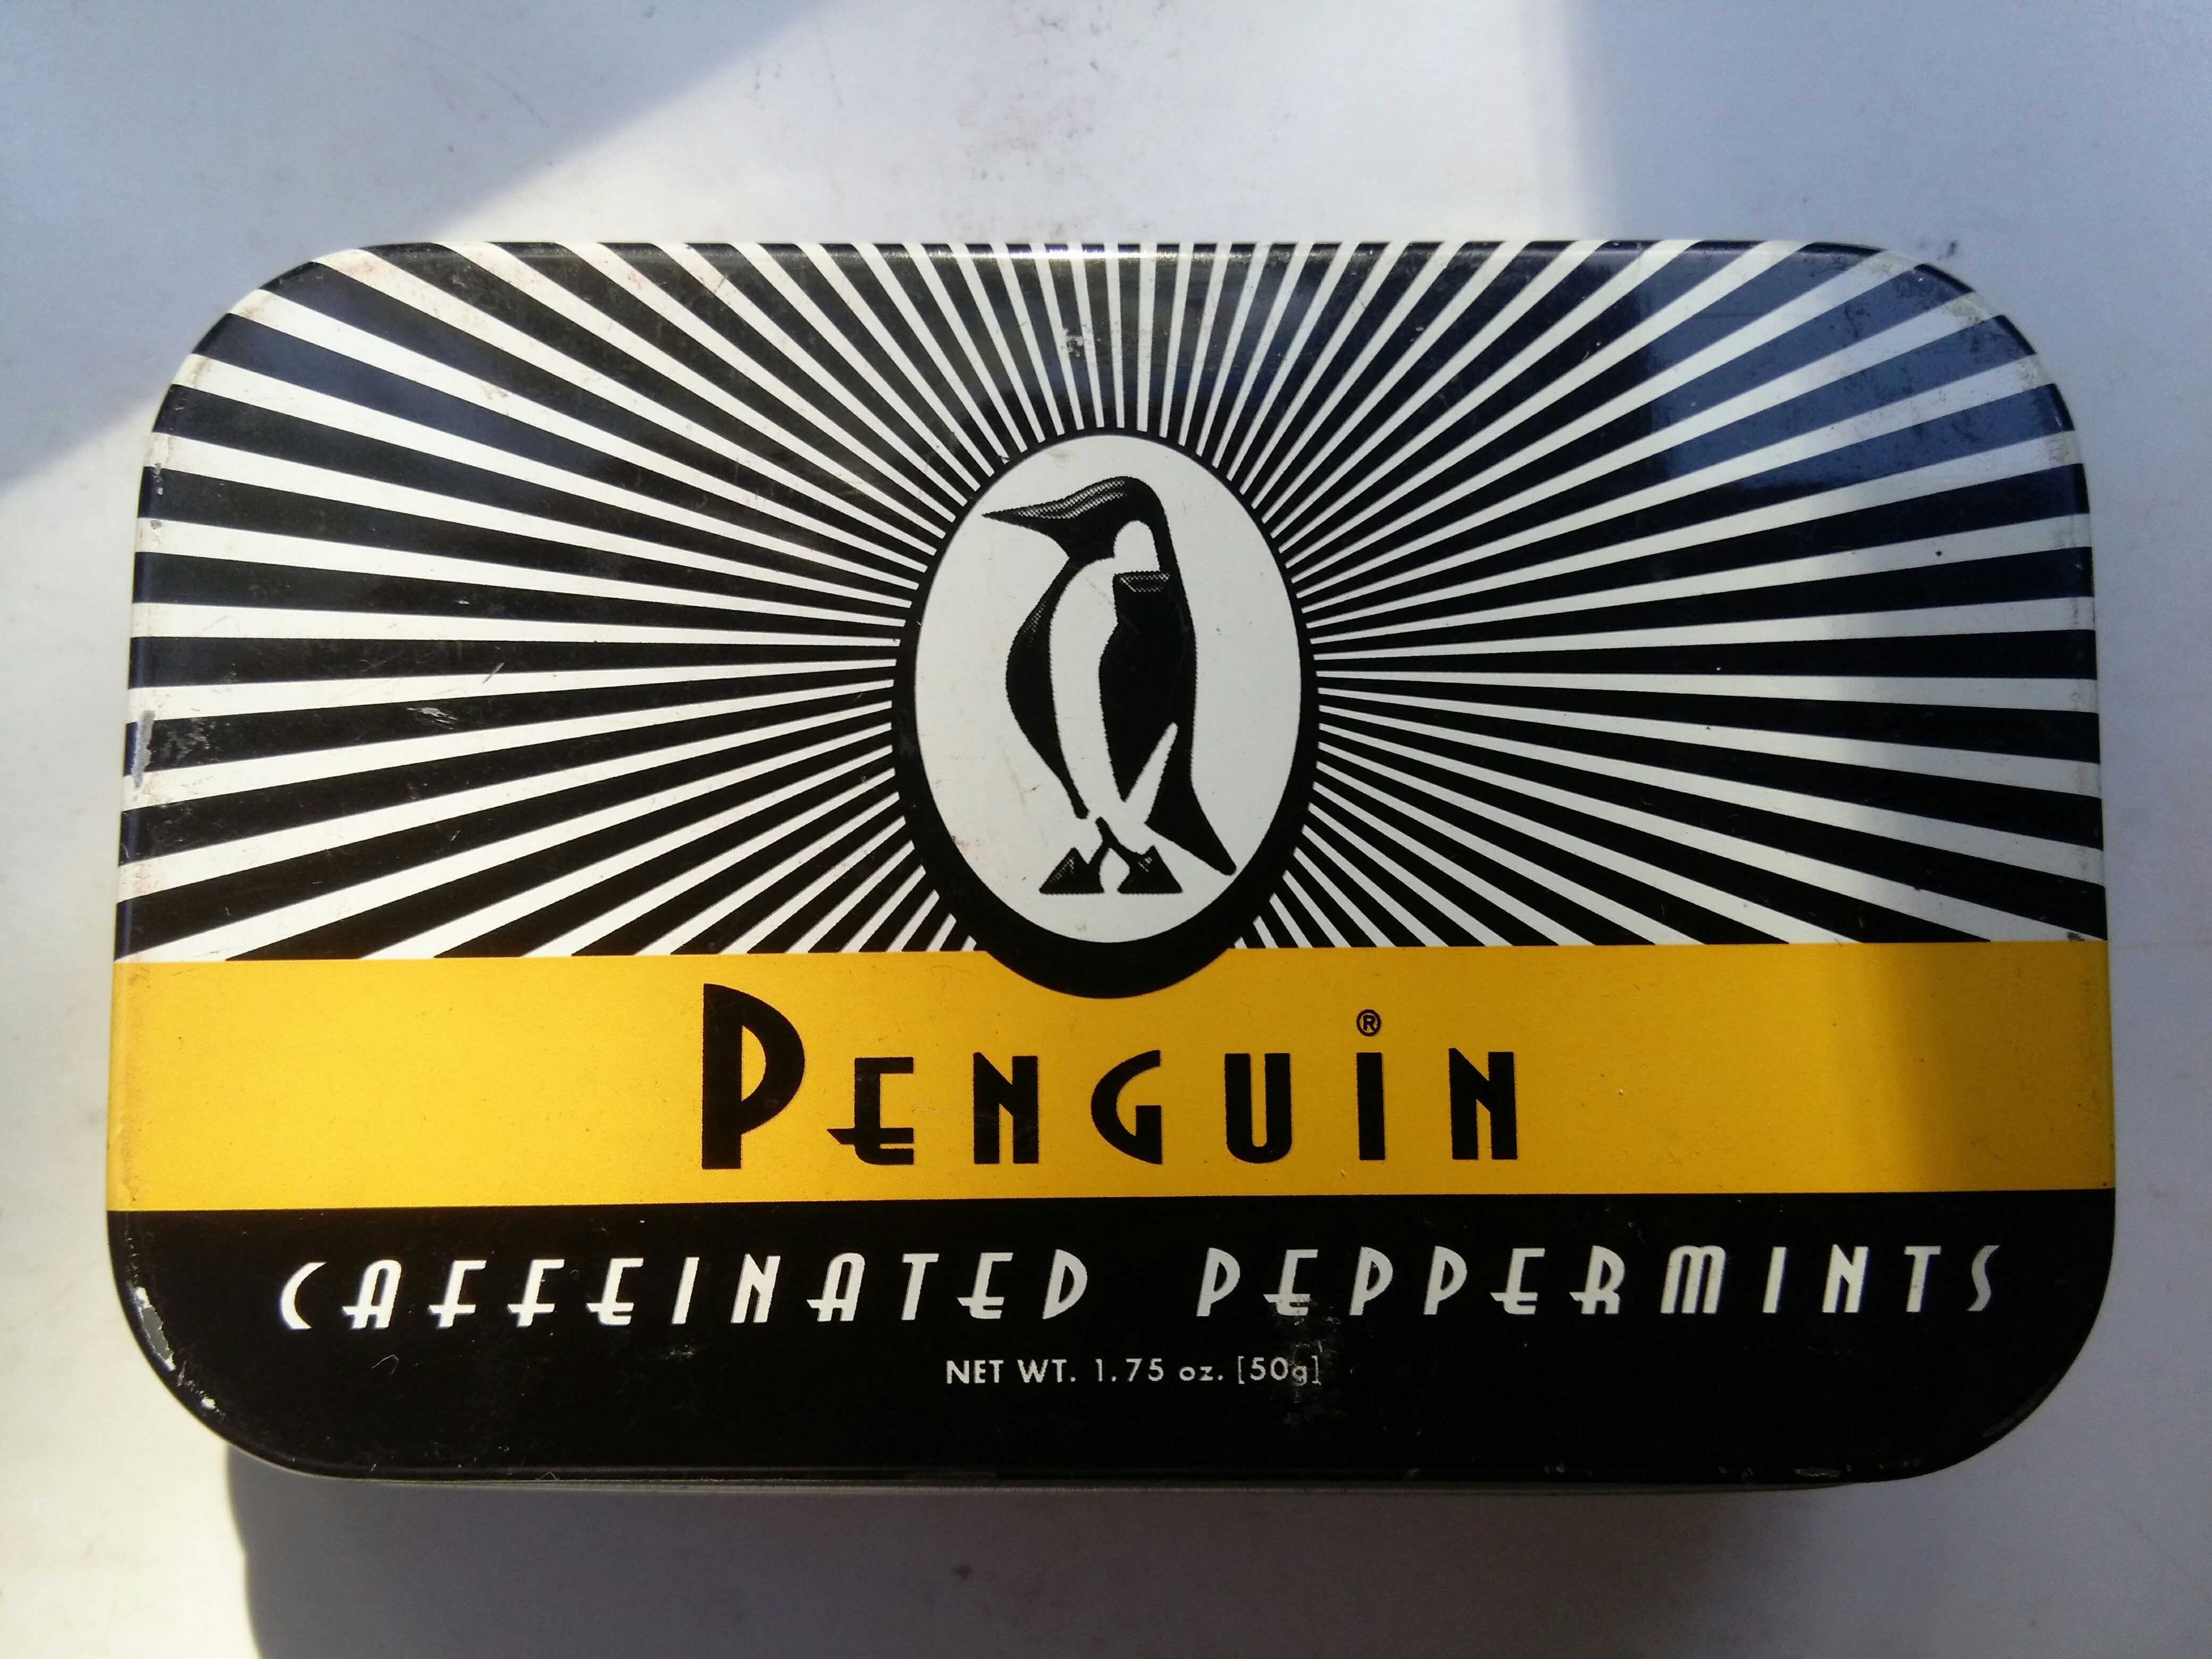 Penguin Caffeinated Mints - Product - en